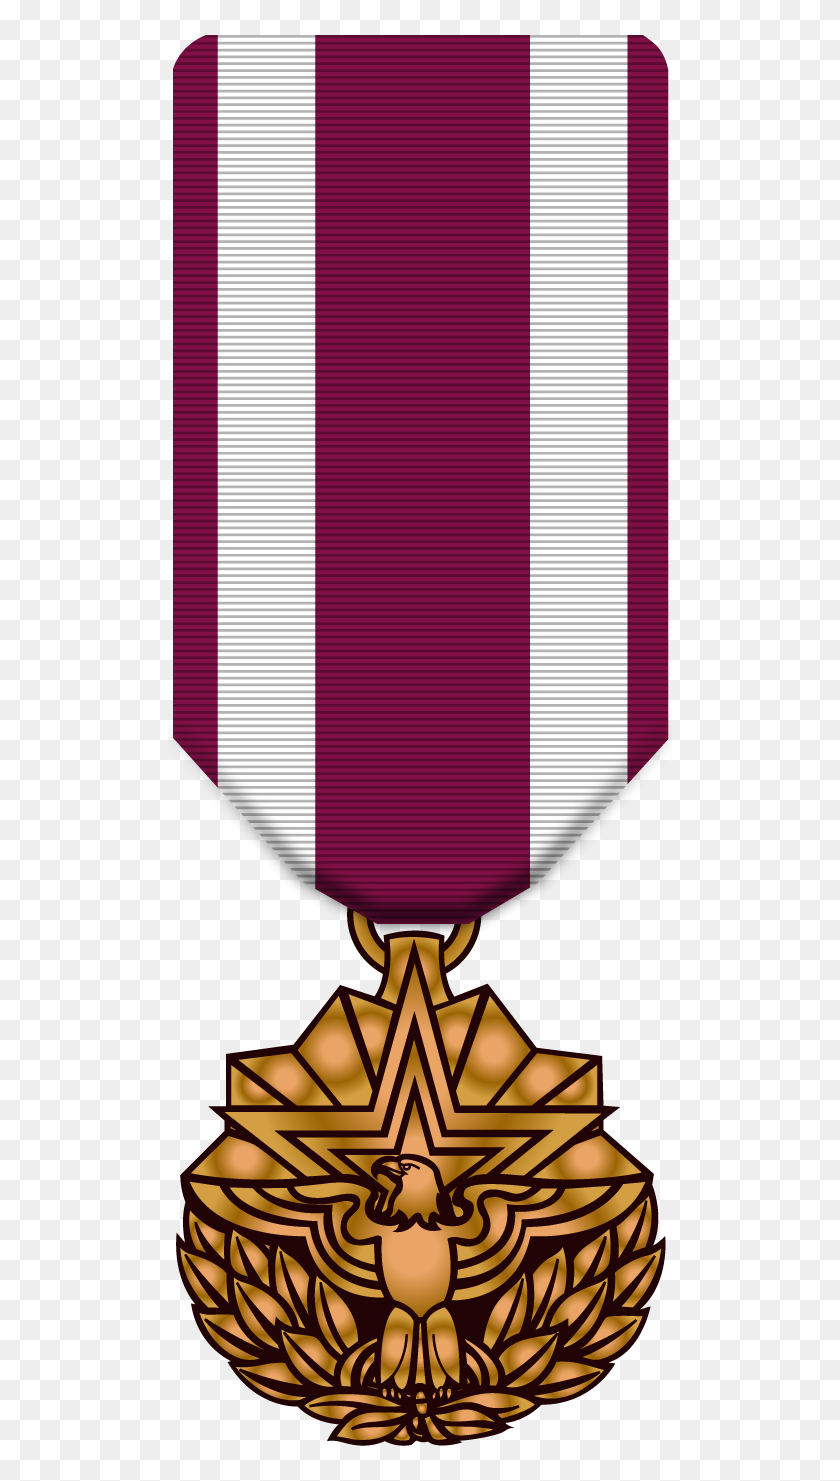 504x1421 Medallas Del Cuerpo De Marines, Medallas De La Marina, Medallas Del Ejército, Medallas De La Fuerza Aérea - Clipart De La Medalla Del Corazón Púrpura